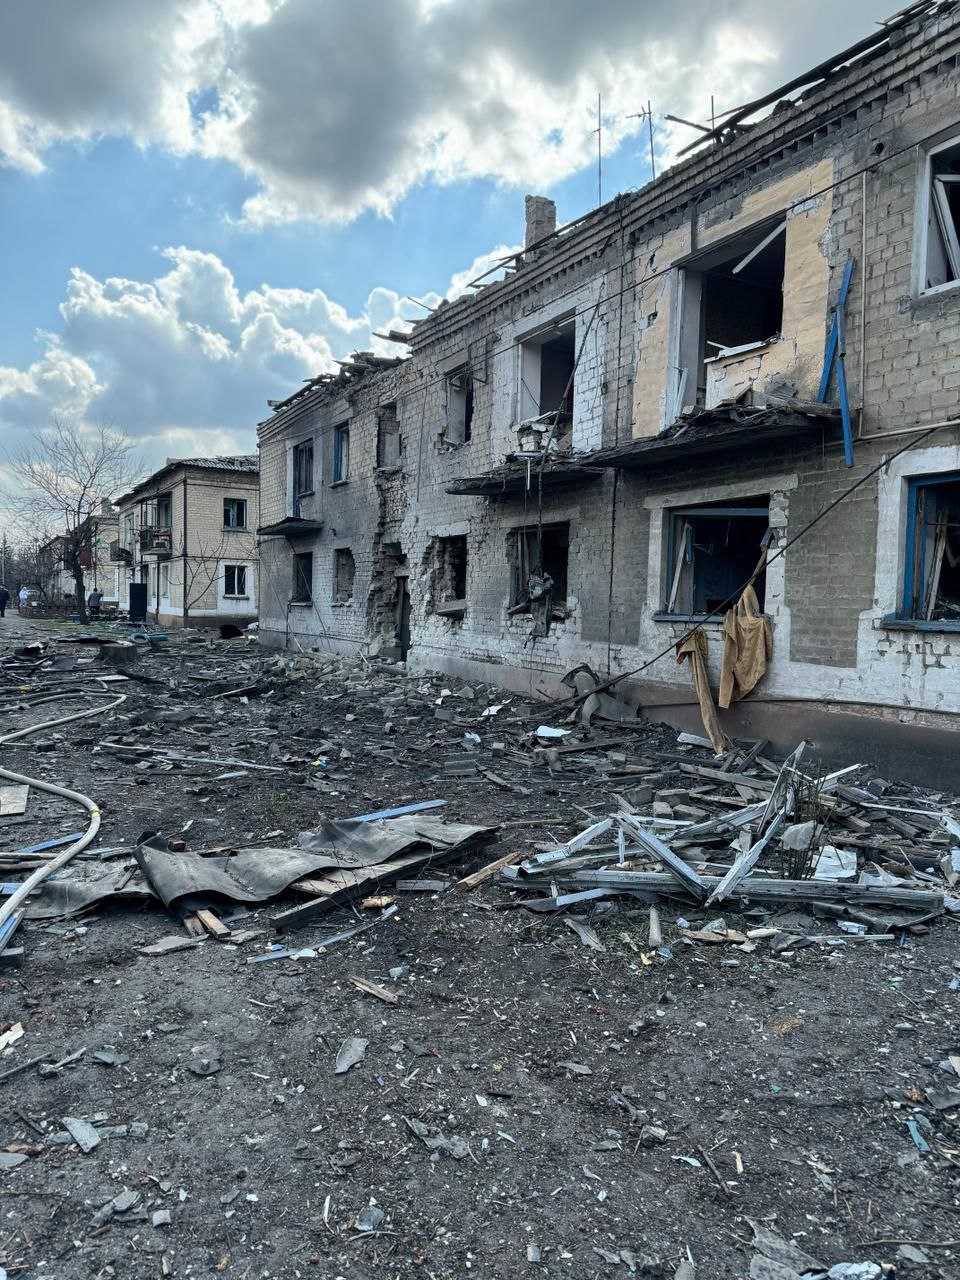 Російська армія обстріляла житловий квартал Українська 27 березня: постраждали дві людини 2